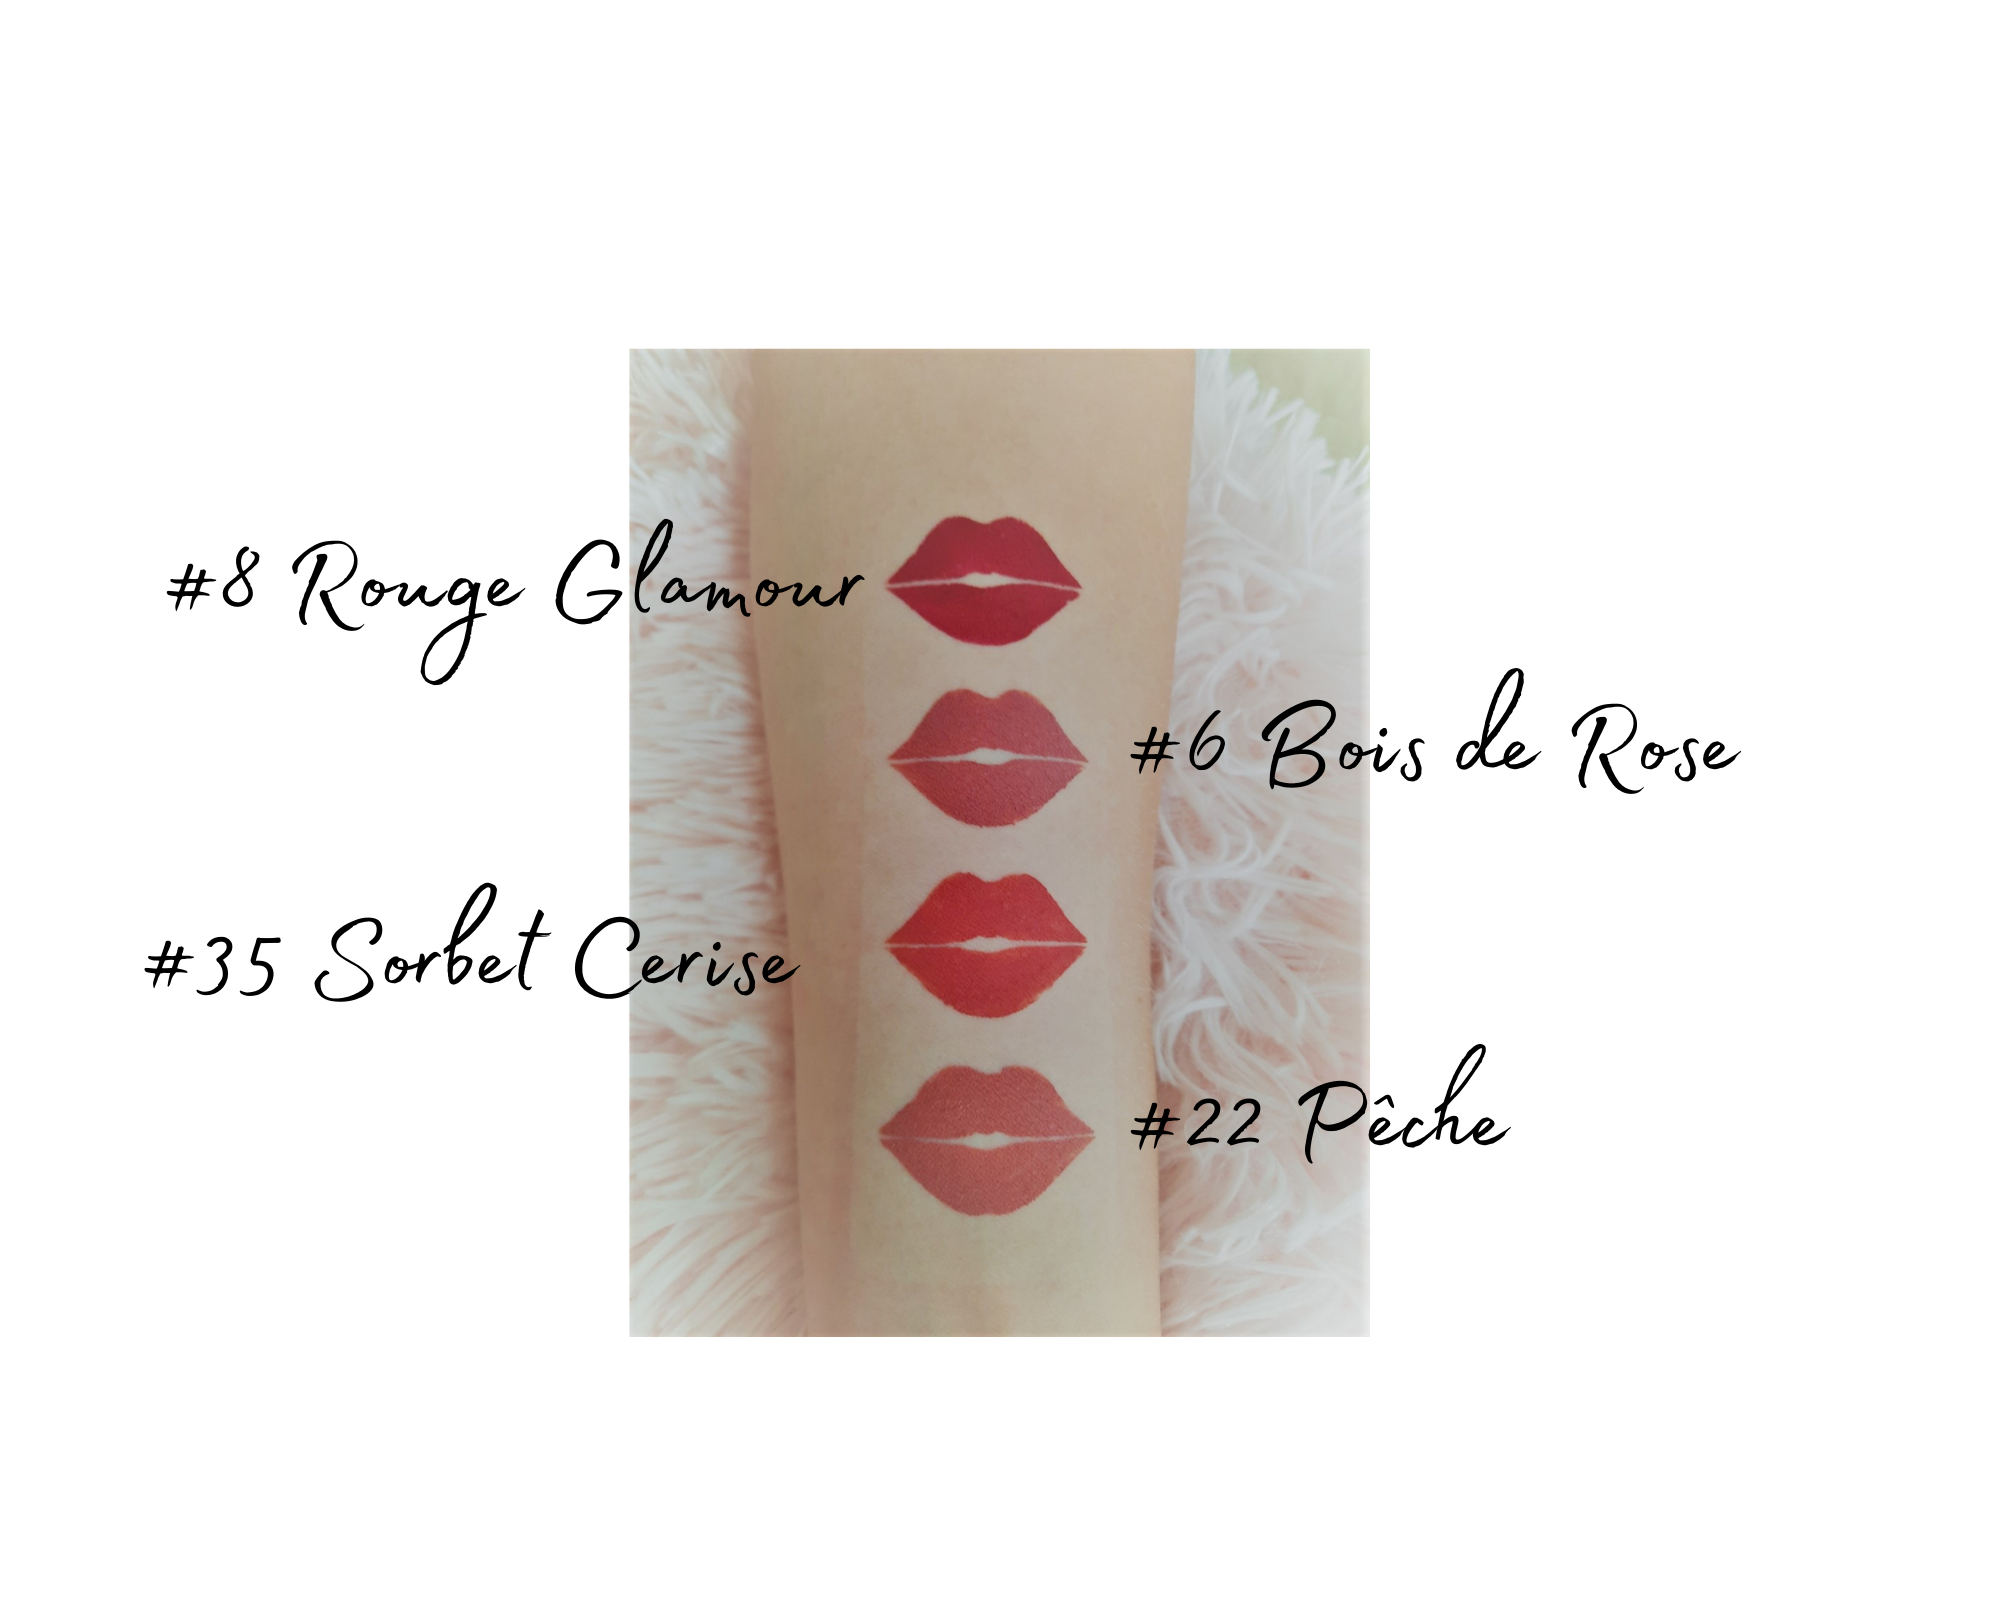 Rouge à lèvres # 008 Rouge Glamour liquide mat imperméable